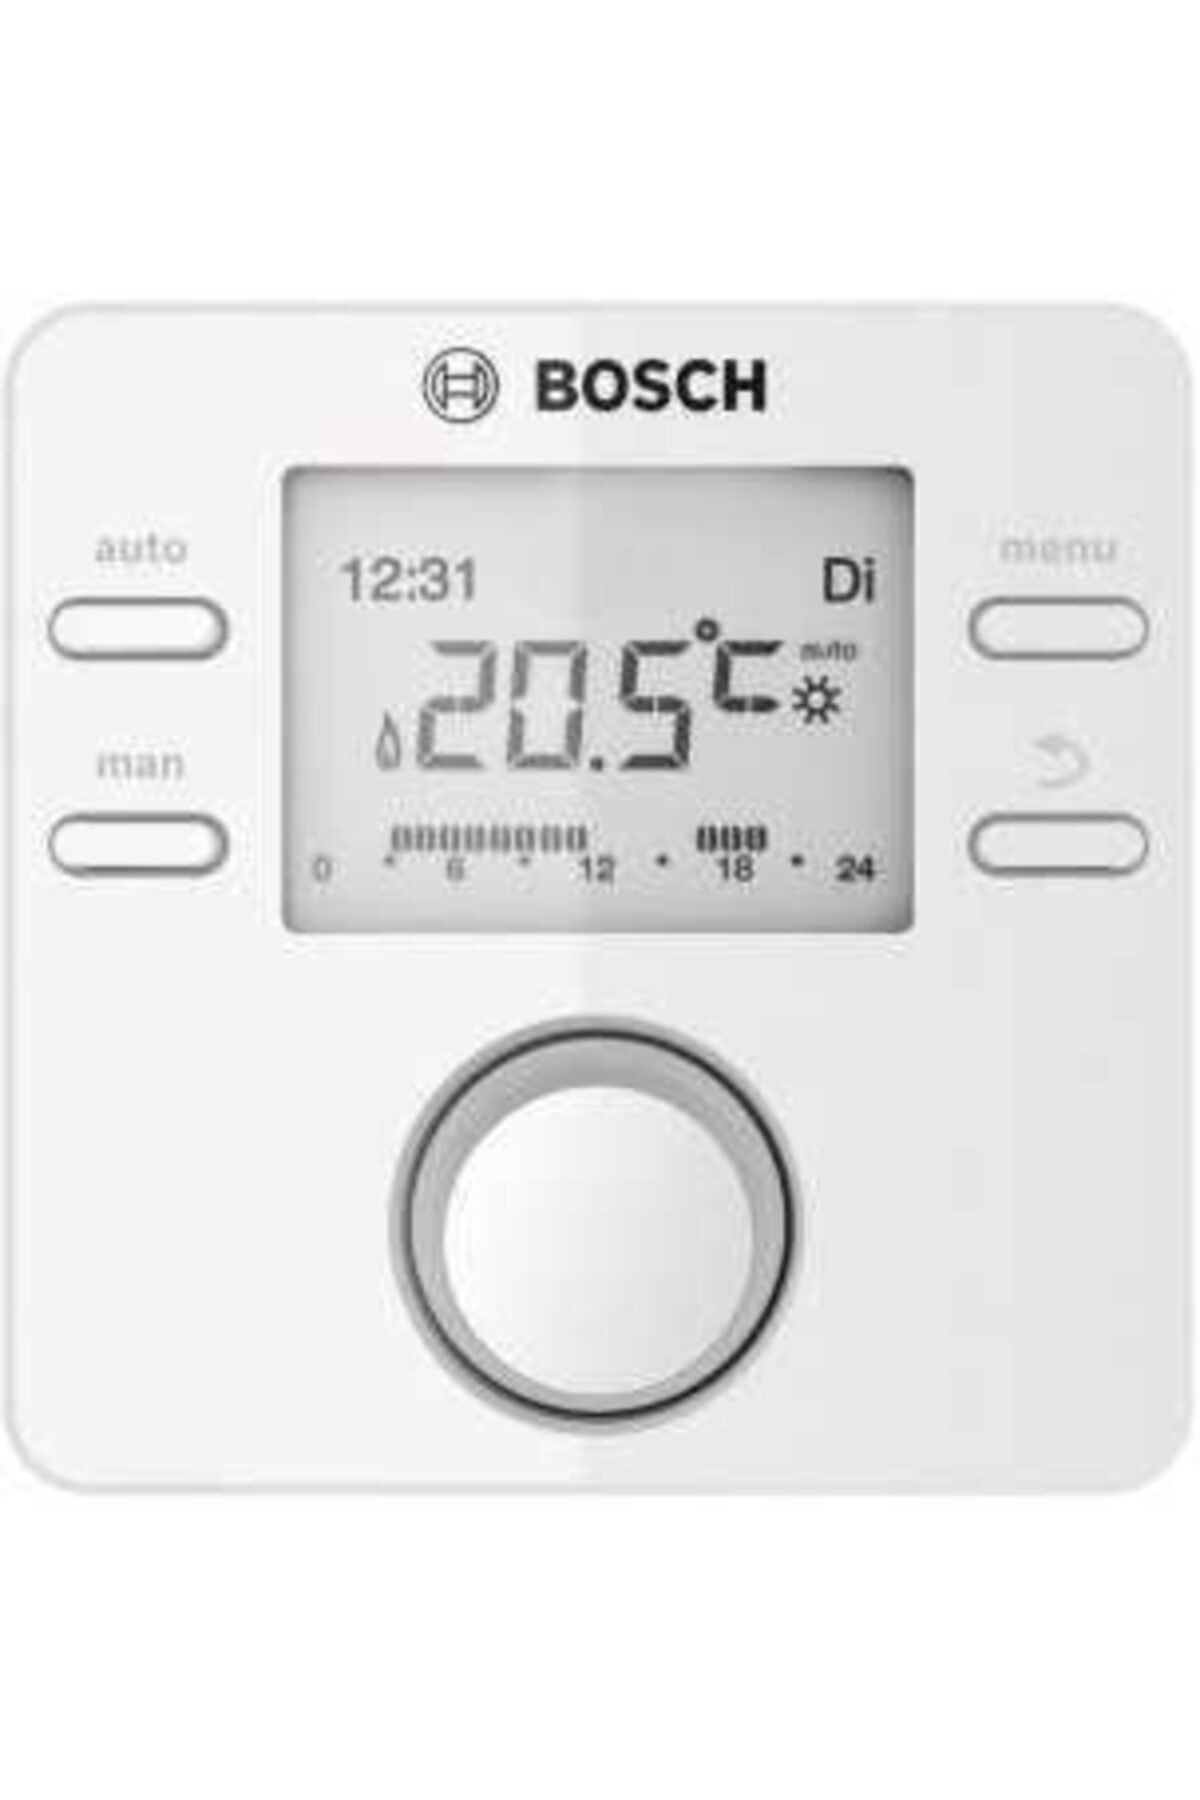 Bosch Cr50 Kablolu Modülasyonlu Programlanabilir Oda Termostatı